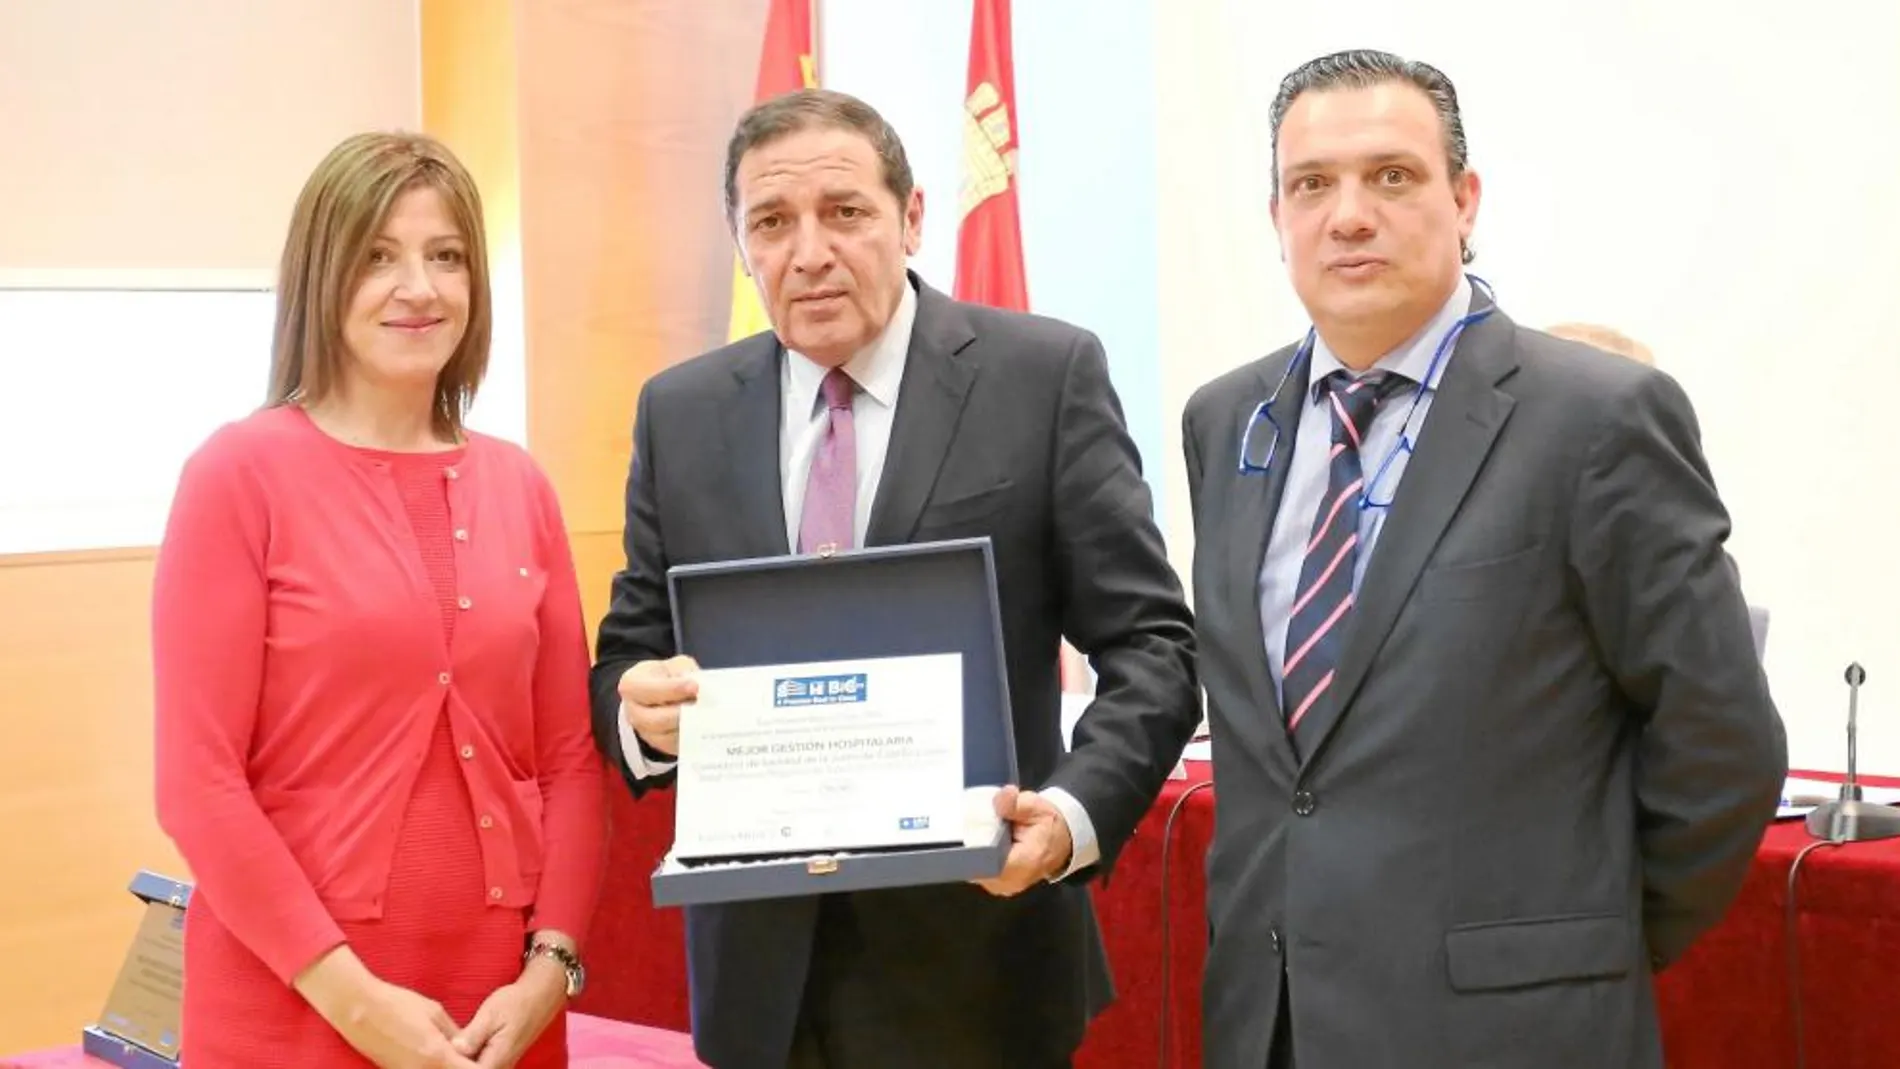 El consejero de Sanidad, Antonio María Sáez Aguado, recibe uno de los premios «Best in Class», junto a los organizadores de los galardones